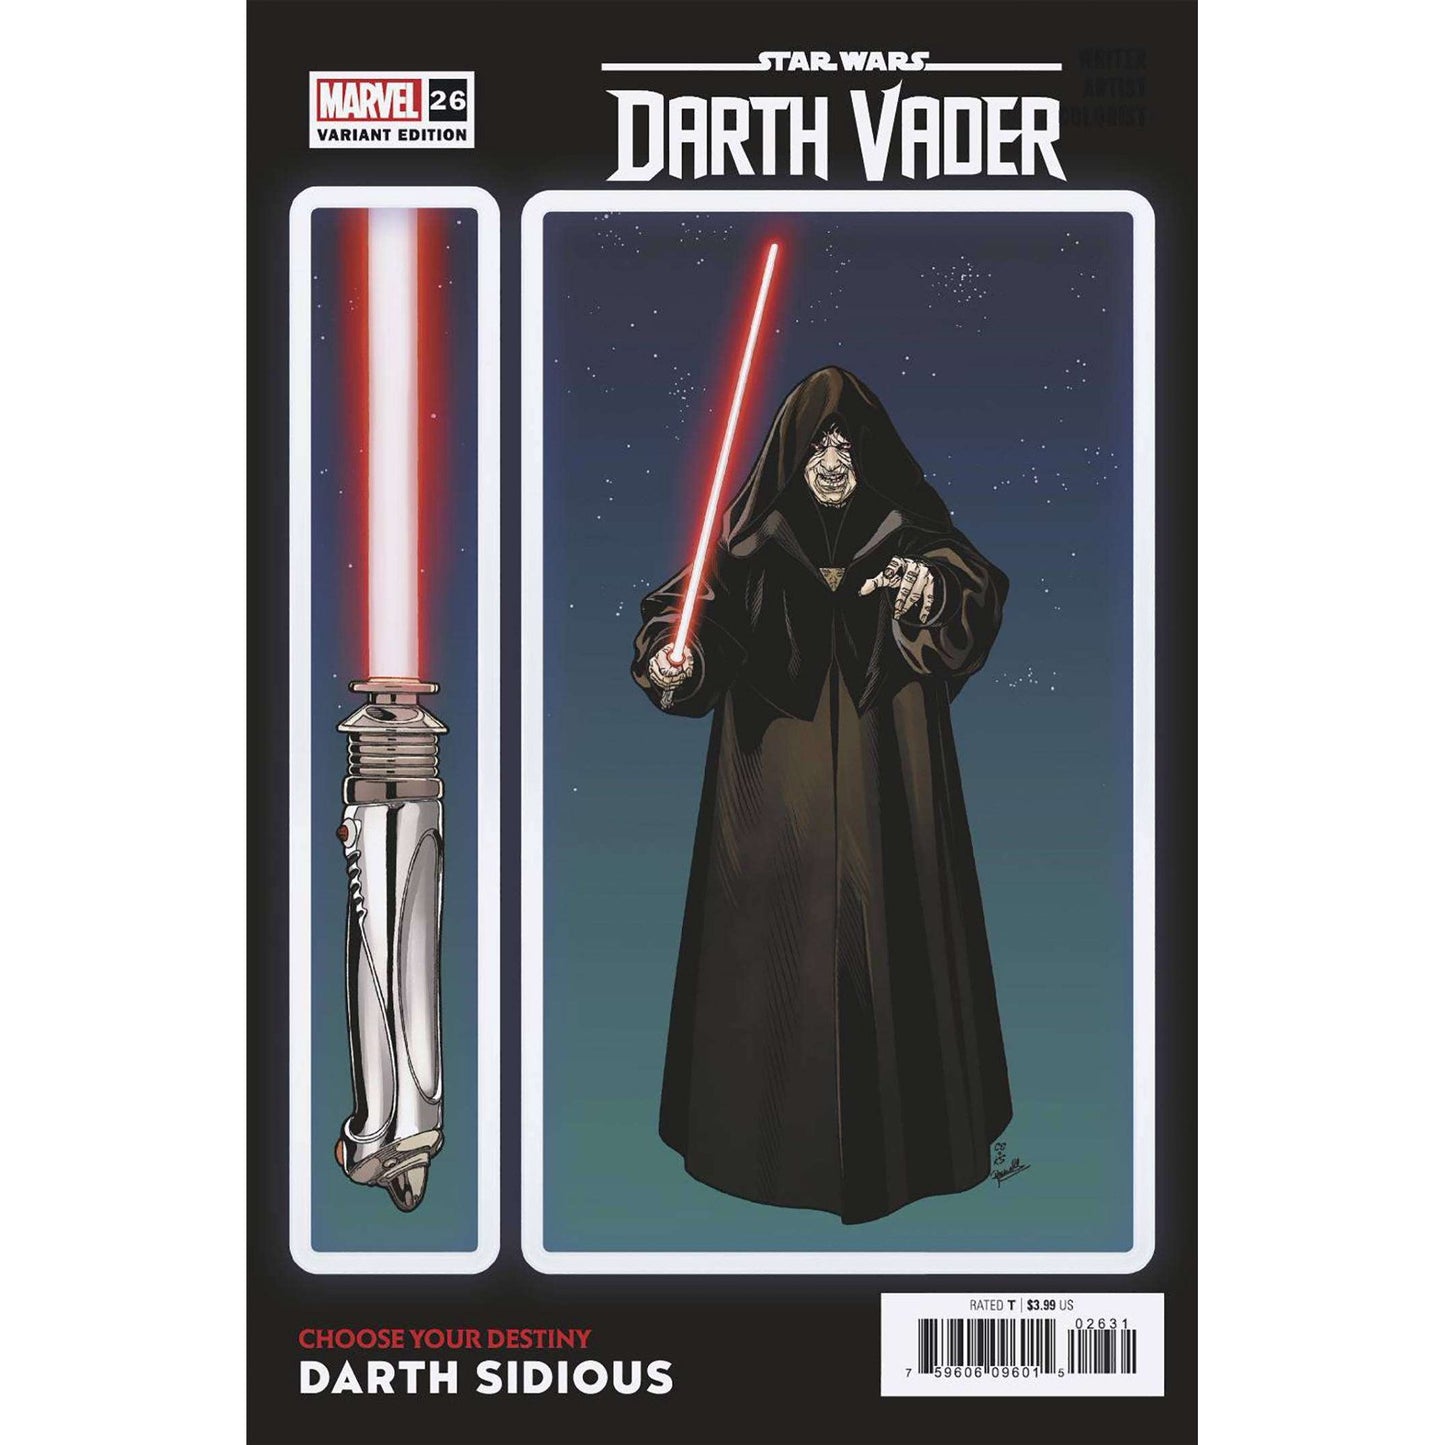 Star Wars: Darth Vader #26 Variant Cover